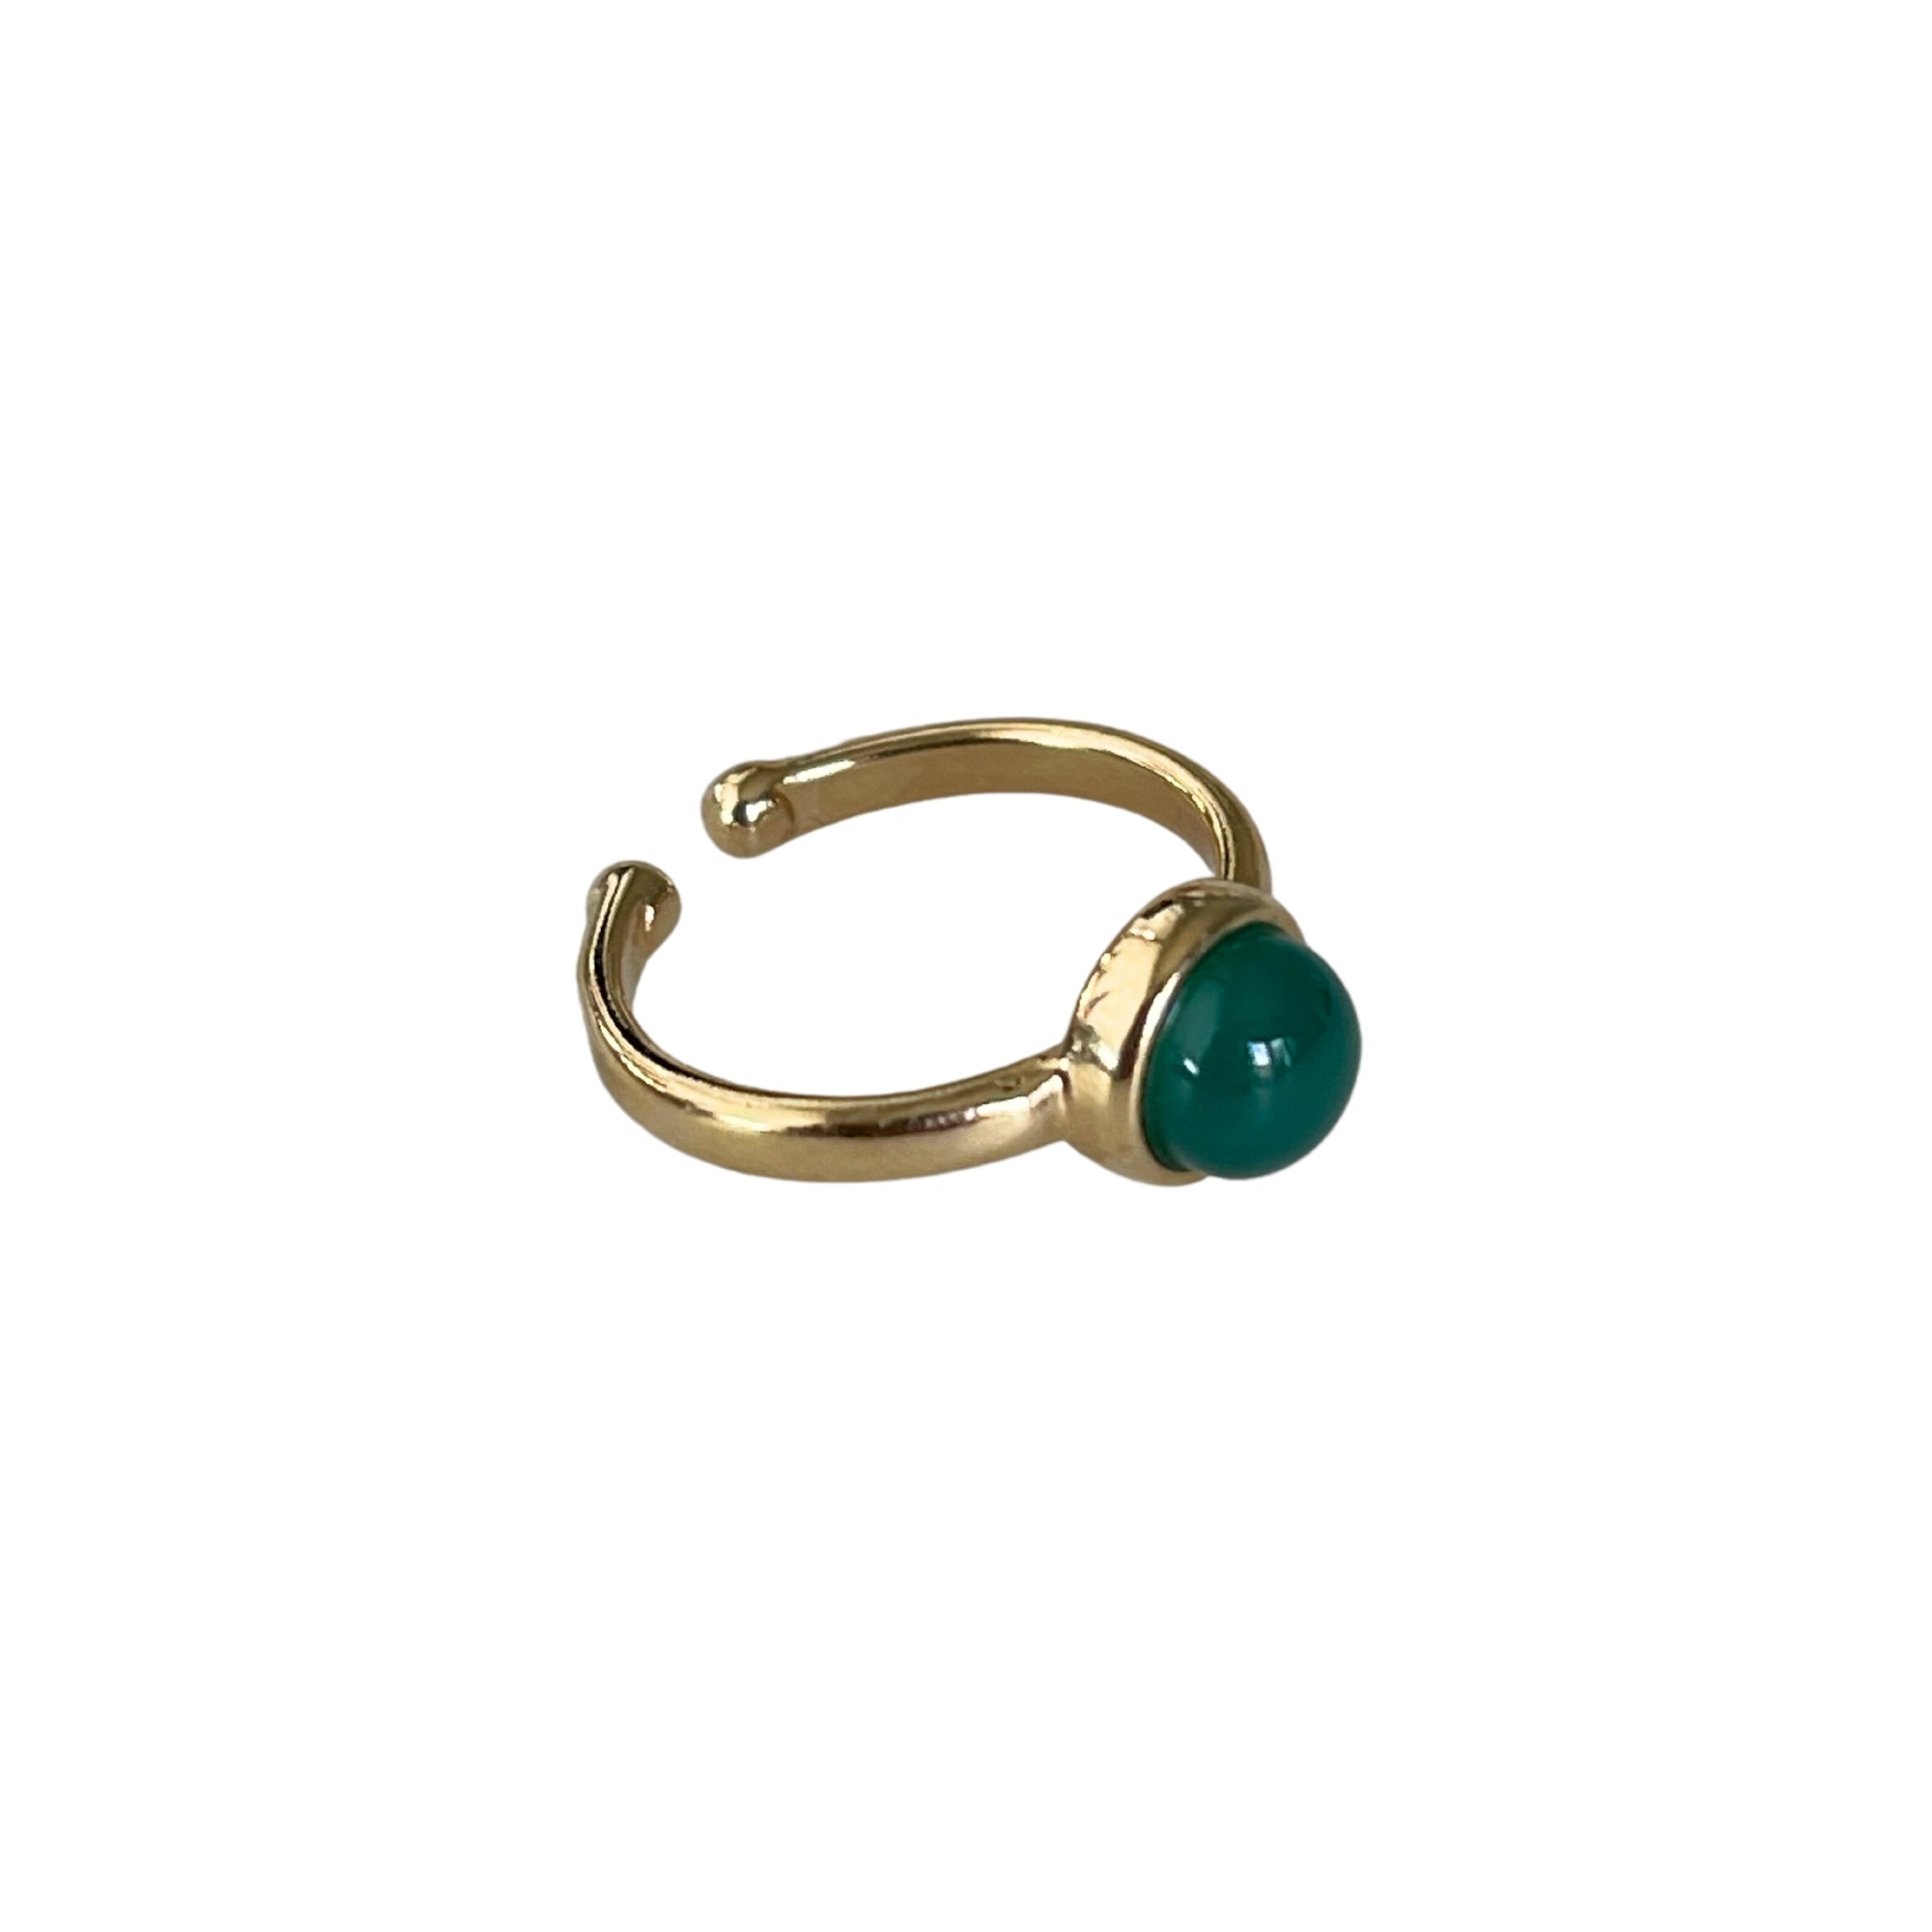 Der Ring "ADRIANA", vergoldet mit grünem Achat aus 18 K, ist besonders zart.  Ein offener Ring in leuchtendem Grün. Verstellbar.  Gefertigt aus hochwertigem 18 K vergoldetem Messing und faszinierendem Achat.